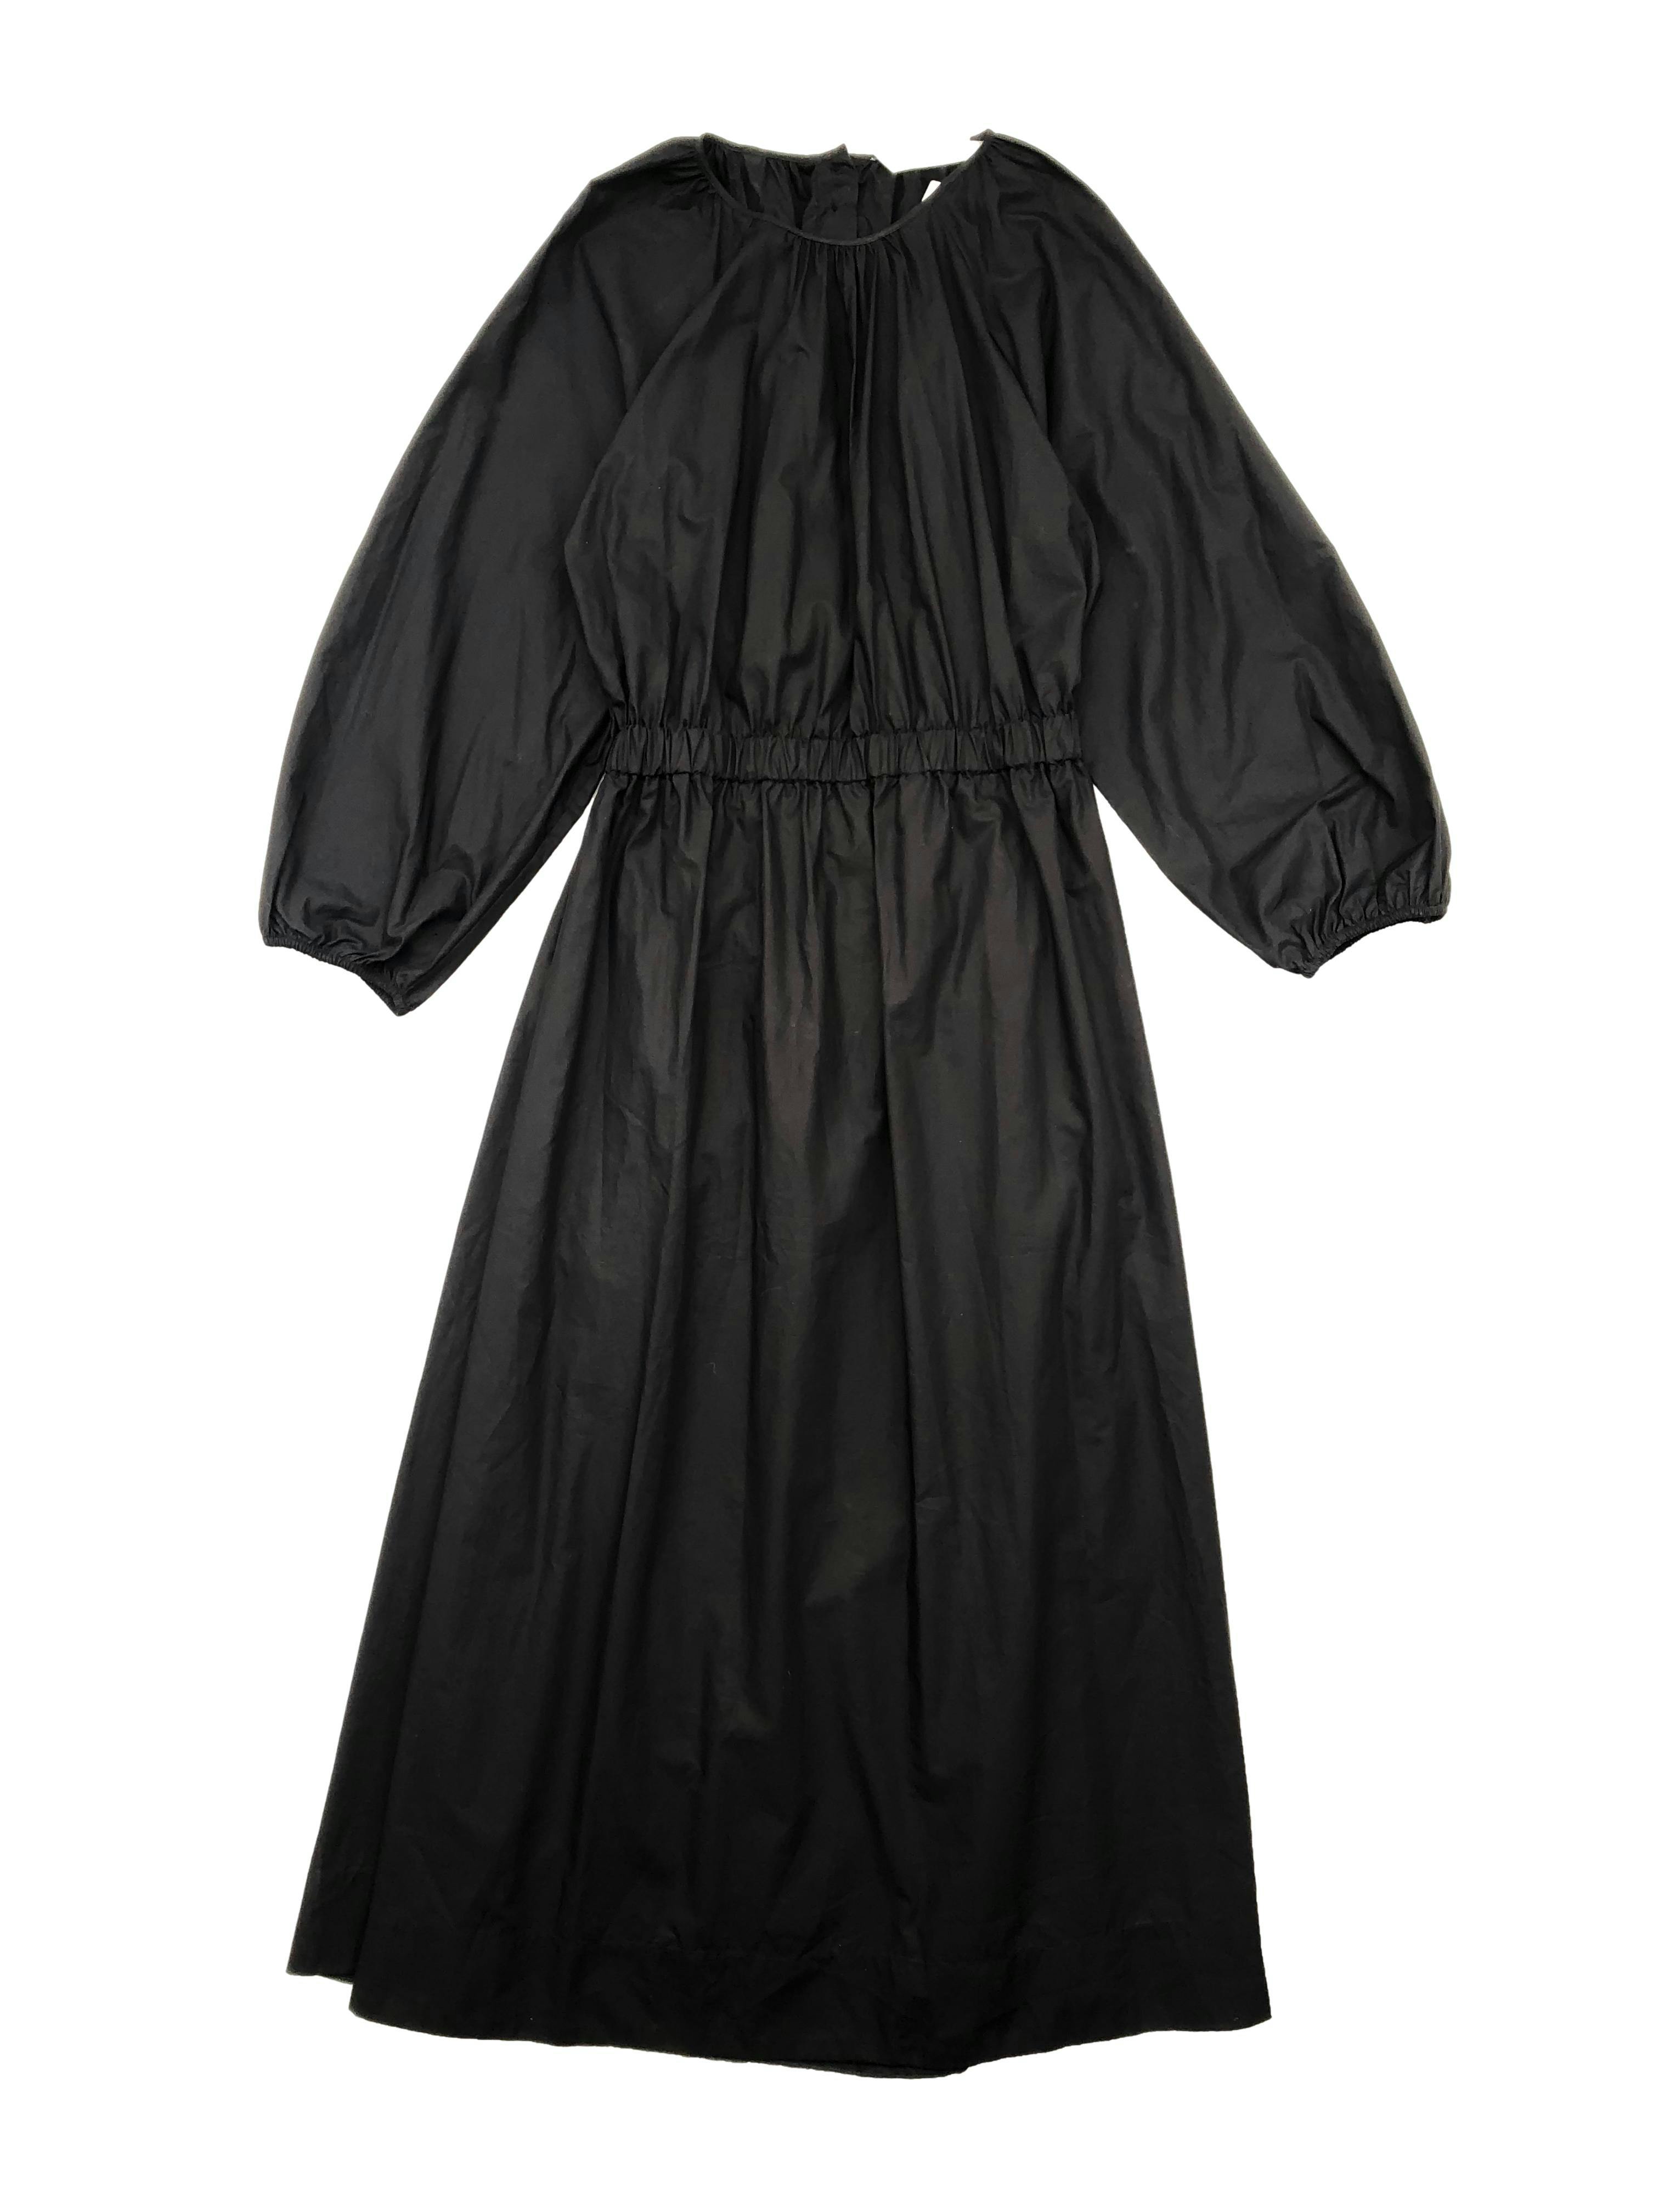 Maxi vestido Zara negro, tela fresca 100% algodón con bolsillos, elástico en cintura y puños, abertura en espalda baja con botones. Busto 90cm sin estirar, Largo 130cm.